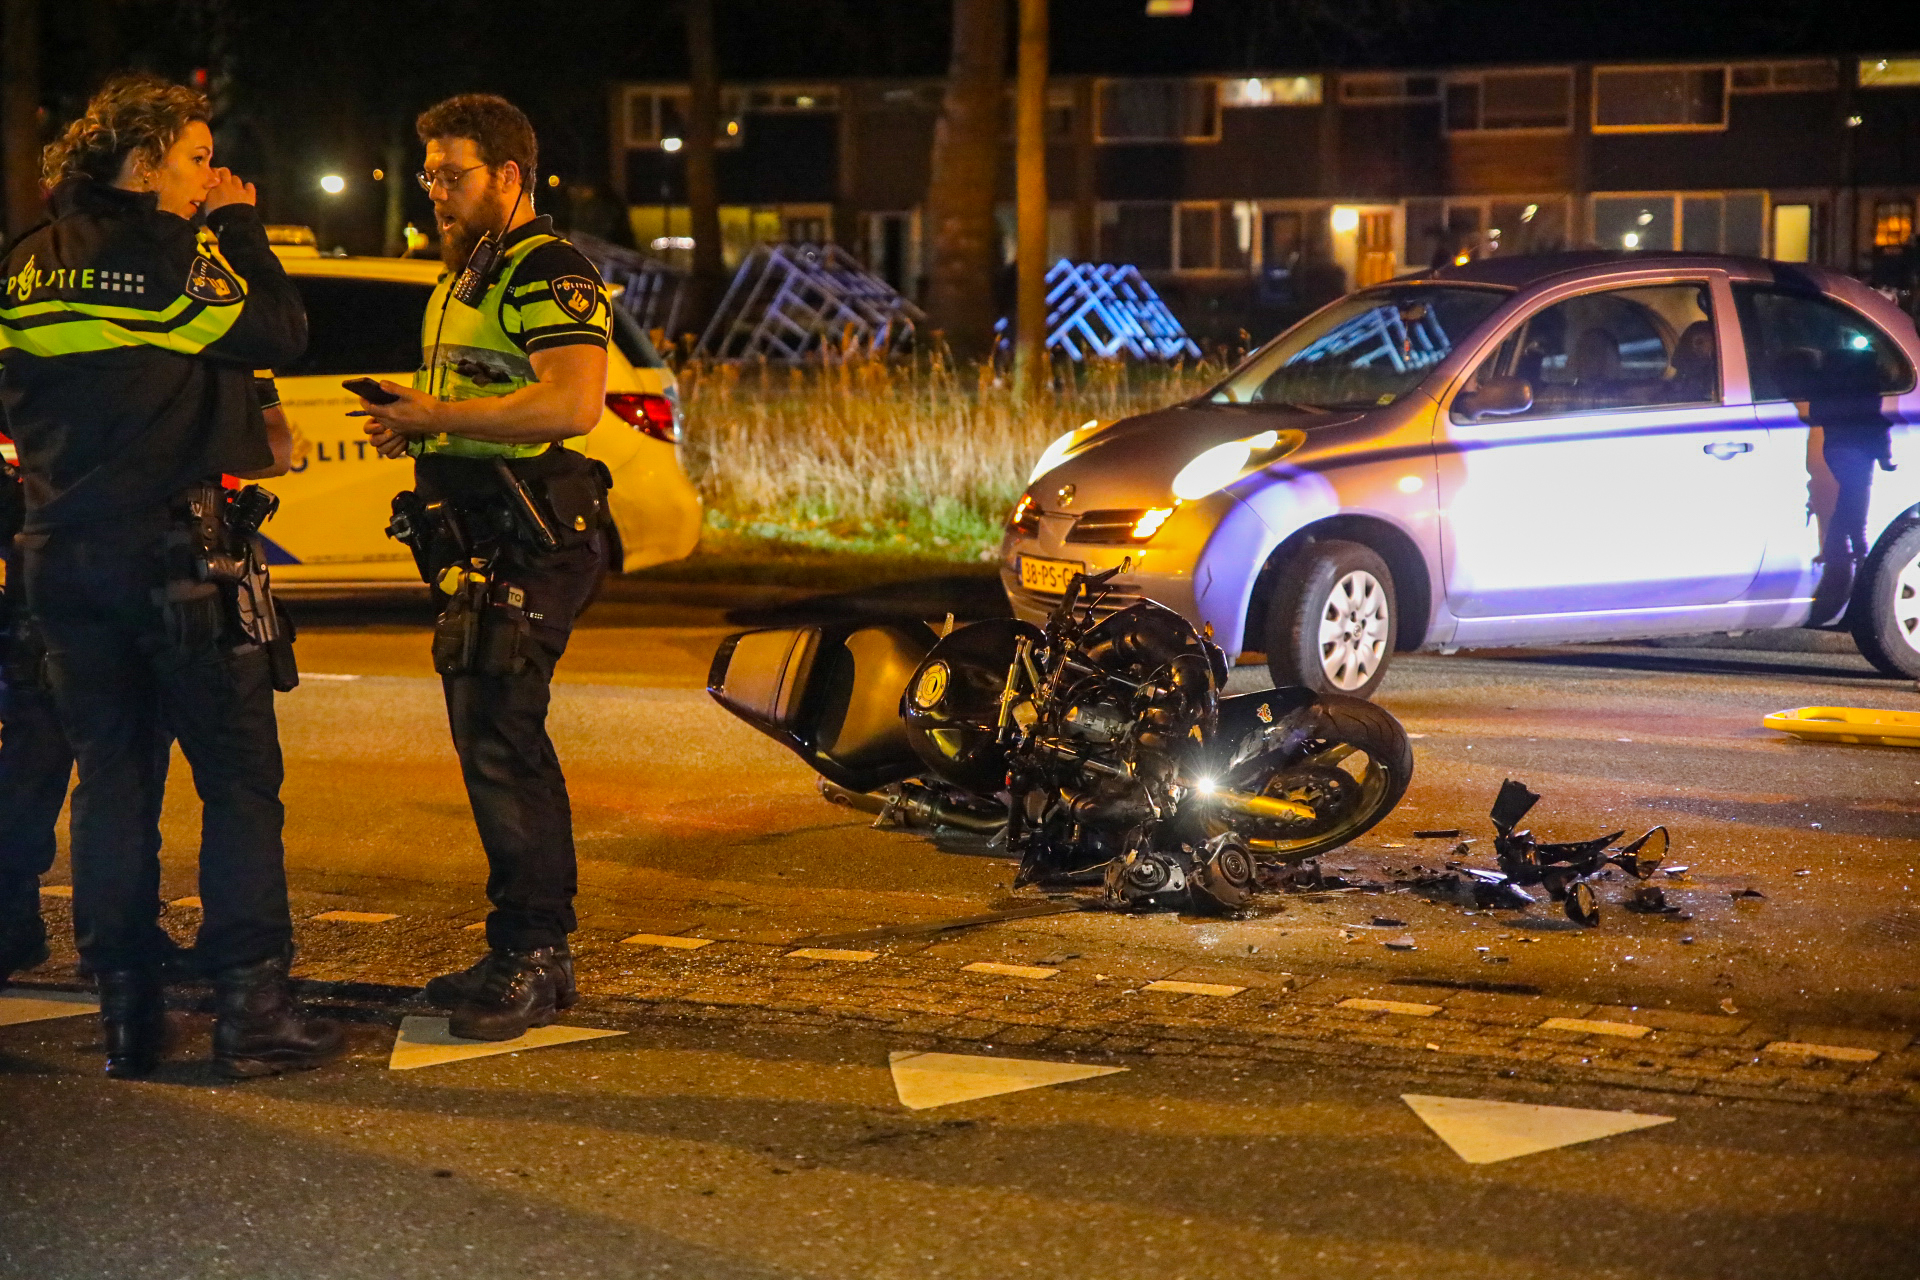 Ernstig motorongeluk in Apeldoorn, twee gewonden met spoed naar het ziekenhuis